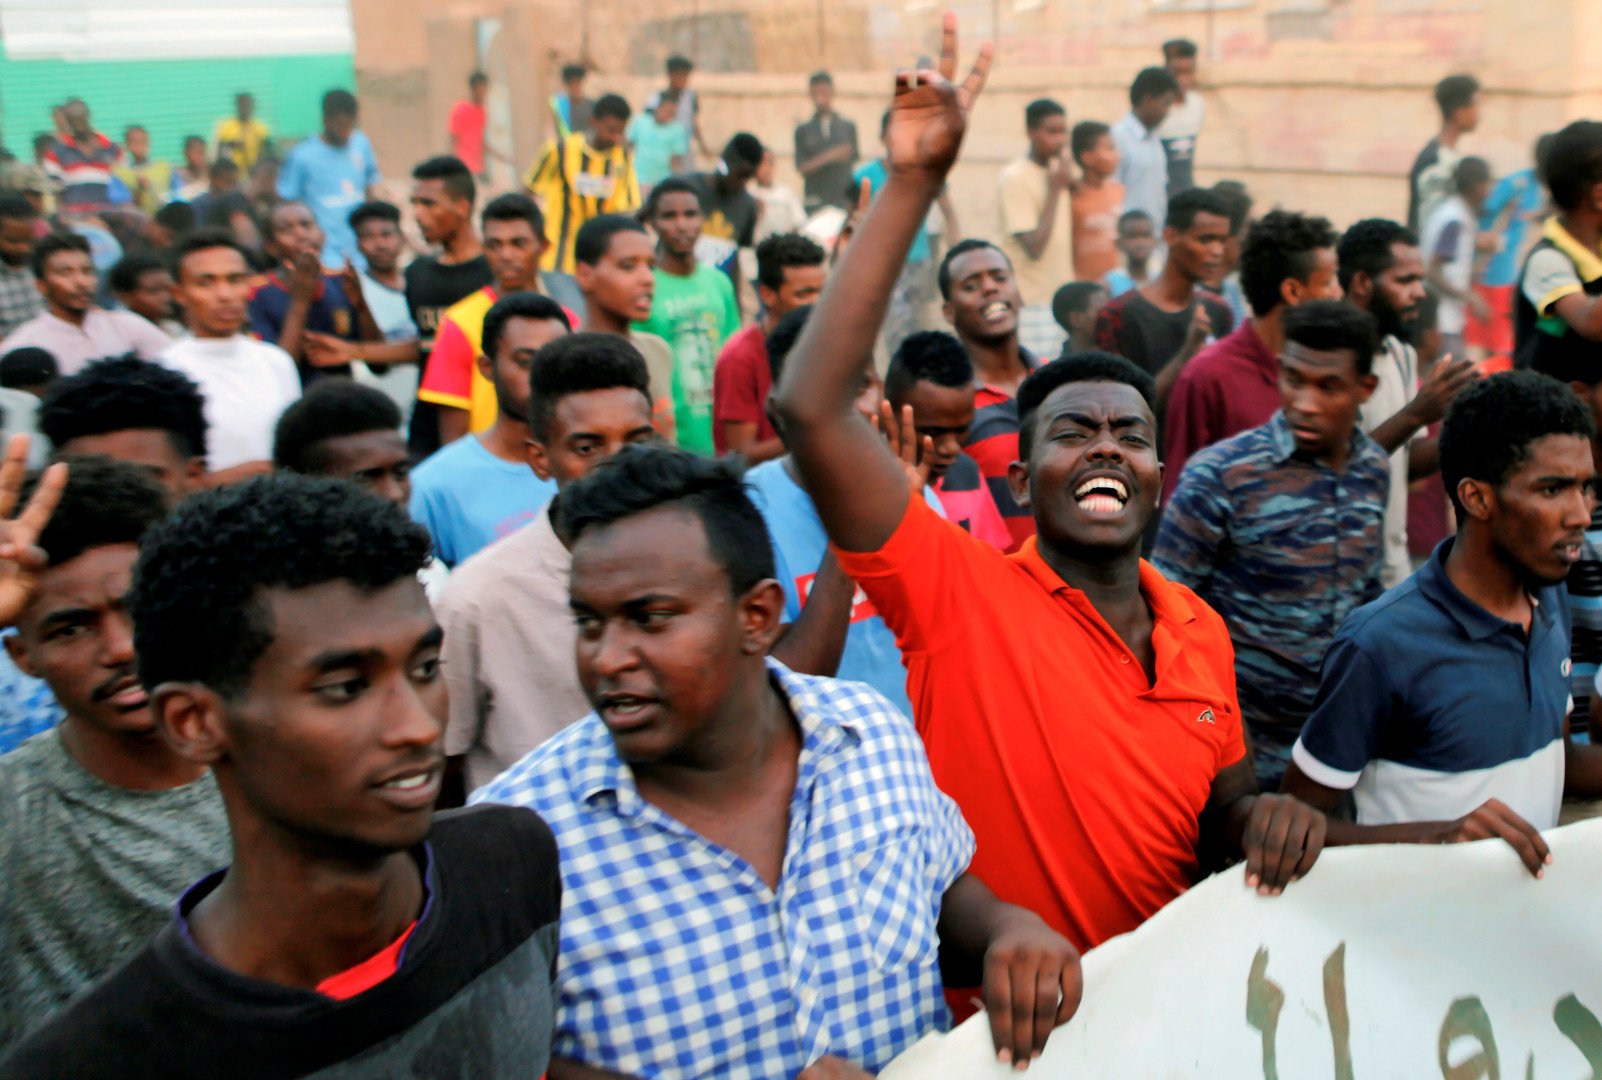 العثور على 3 جثث في أم درمان بعد احتجاجات الأحد في السودان